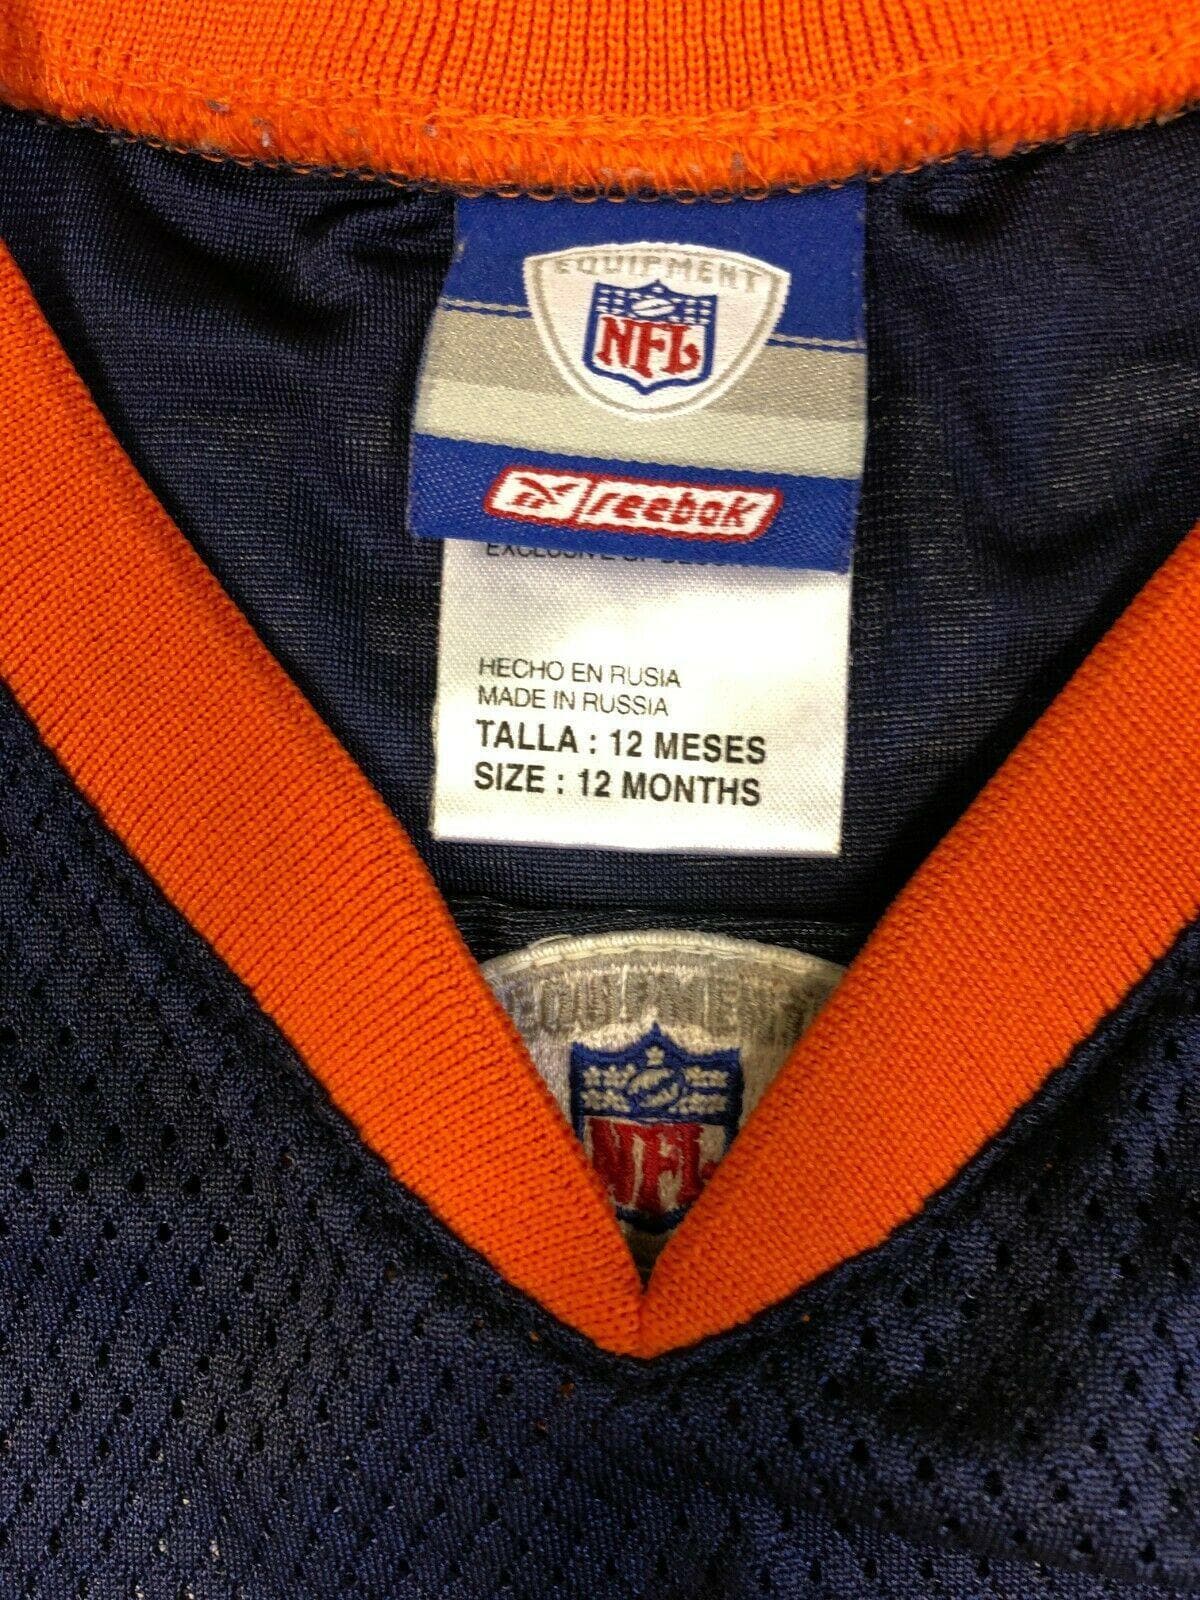 NFL Denver Broncos Ed McCaffrey #87 Jersey style Bodysuit/Vest 12 months